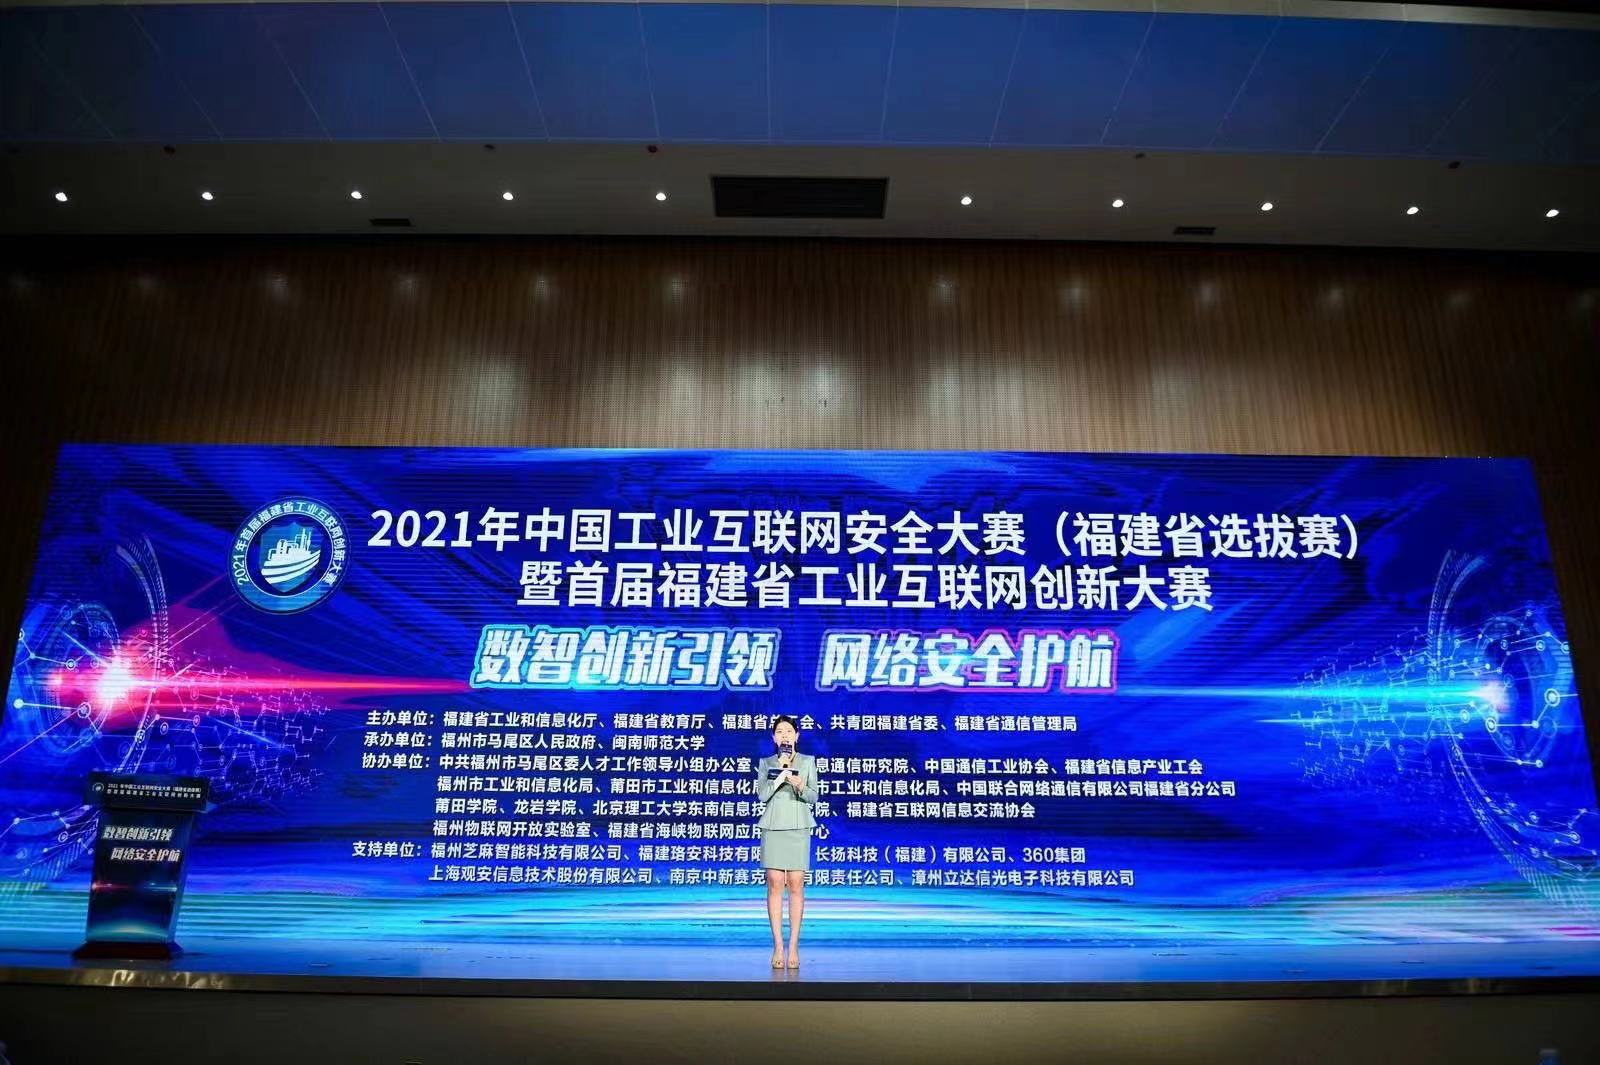 圣博润亮相2021年中国工业互联网安全大赛暨首届福建省工业互联网创新大赛 